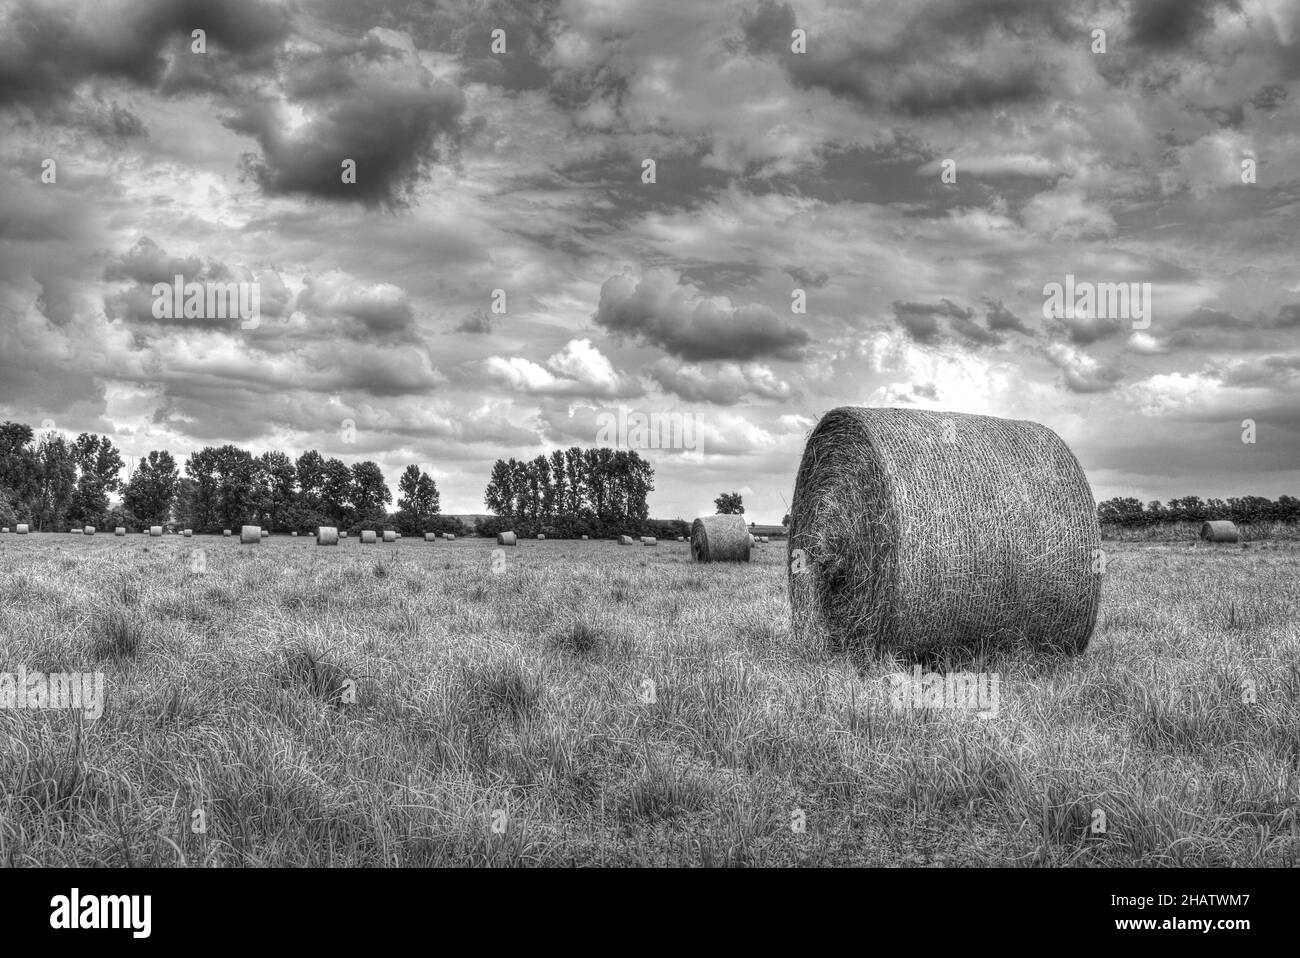 Unheimliche Landschaft von Heuhaufen auf einem landwirtschaftlichen Feld an einem bewölkten Tag, Graustufenaufnahme Stockfoto